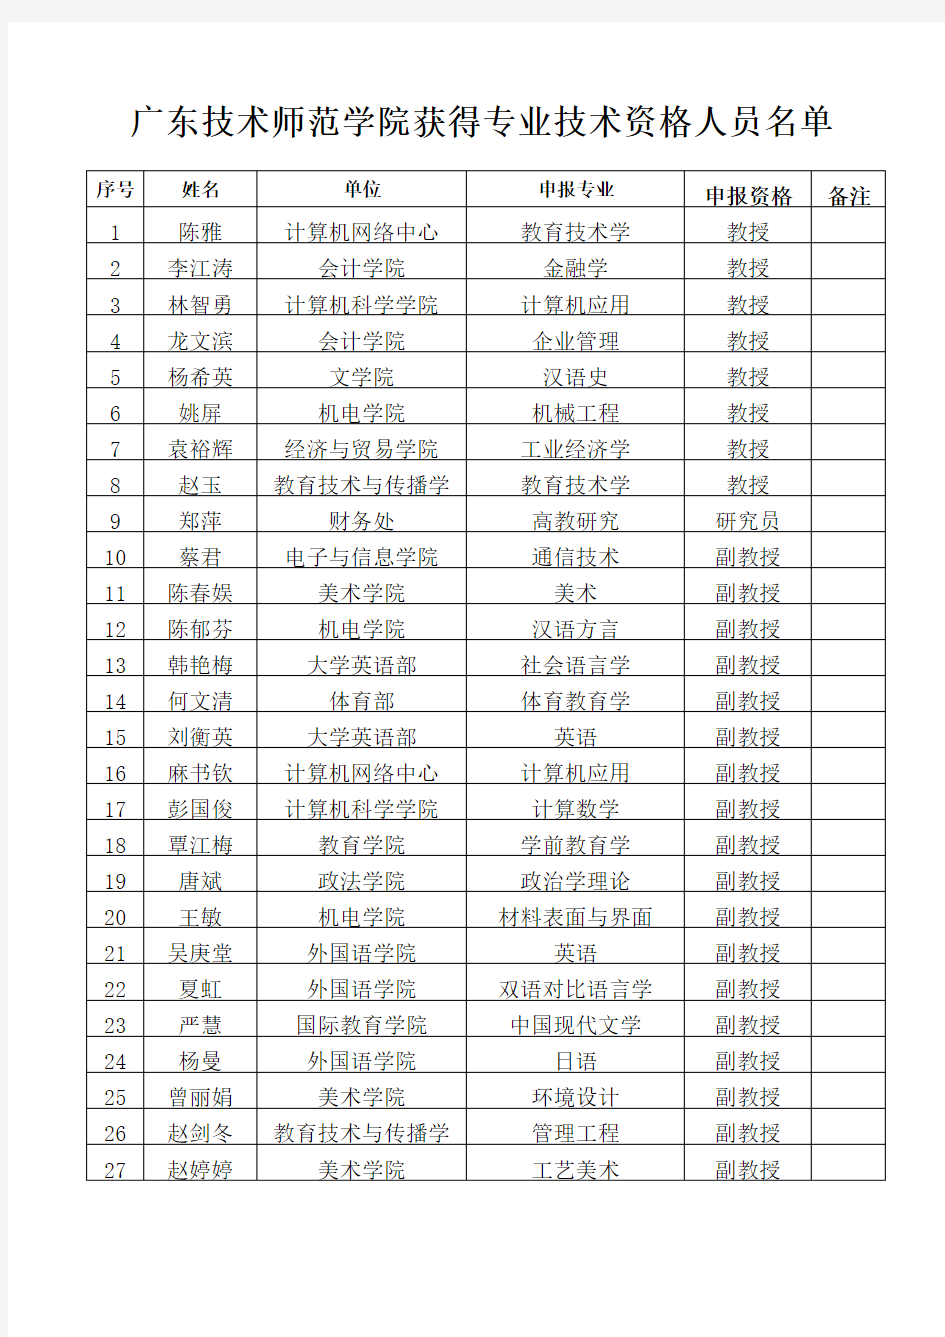 广东技术师范学院获得专业技术资格人员名单